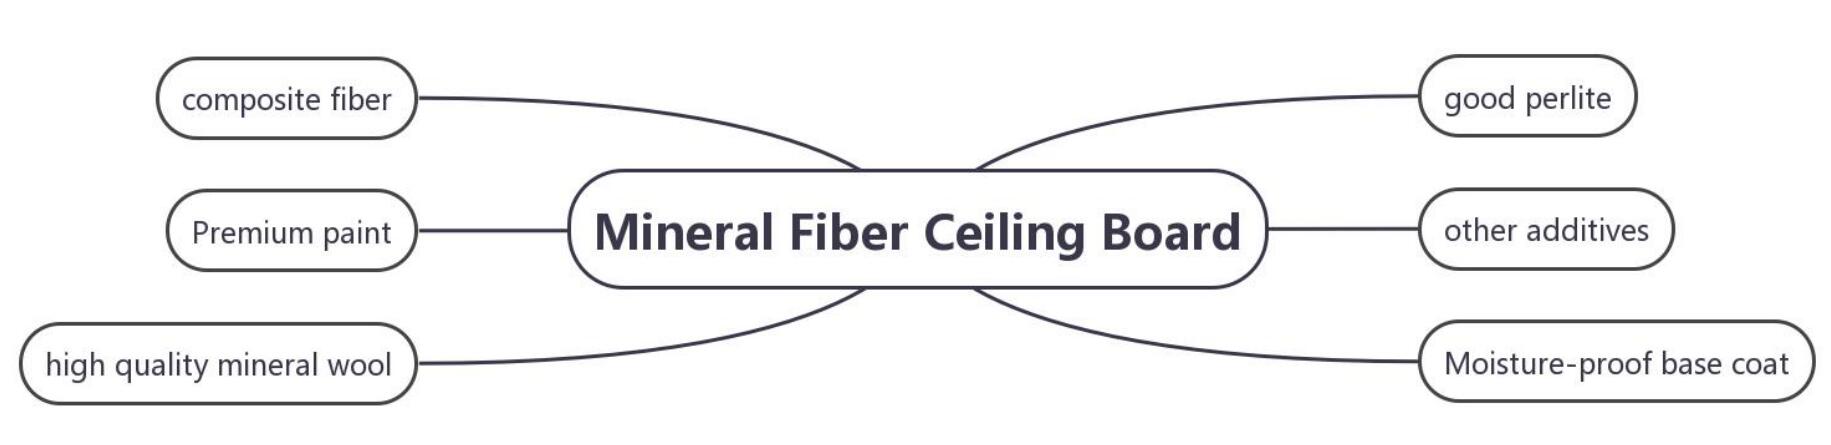 hilaw na materyales ng mineral fiber